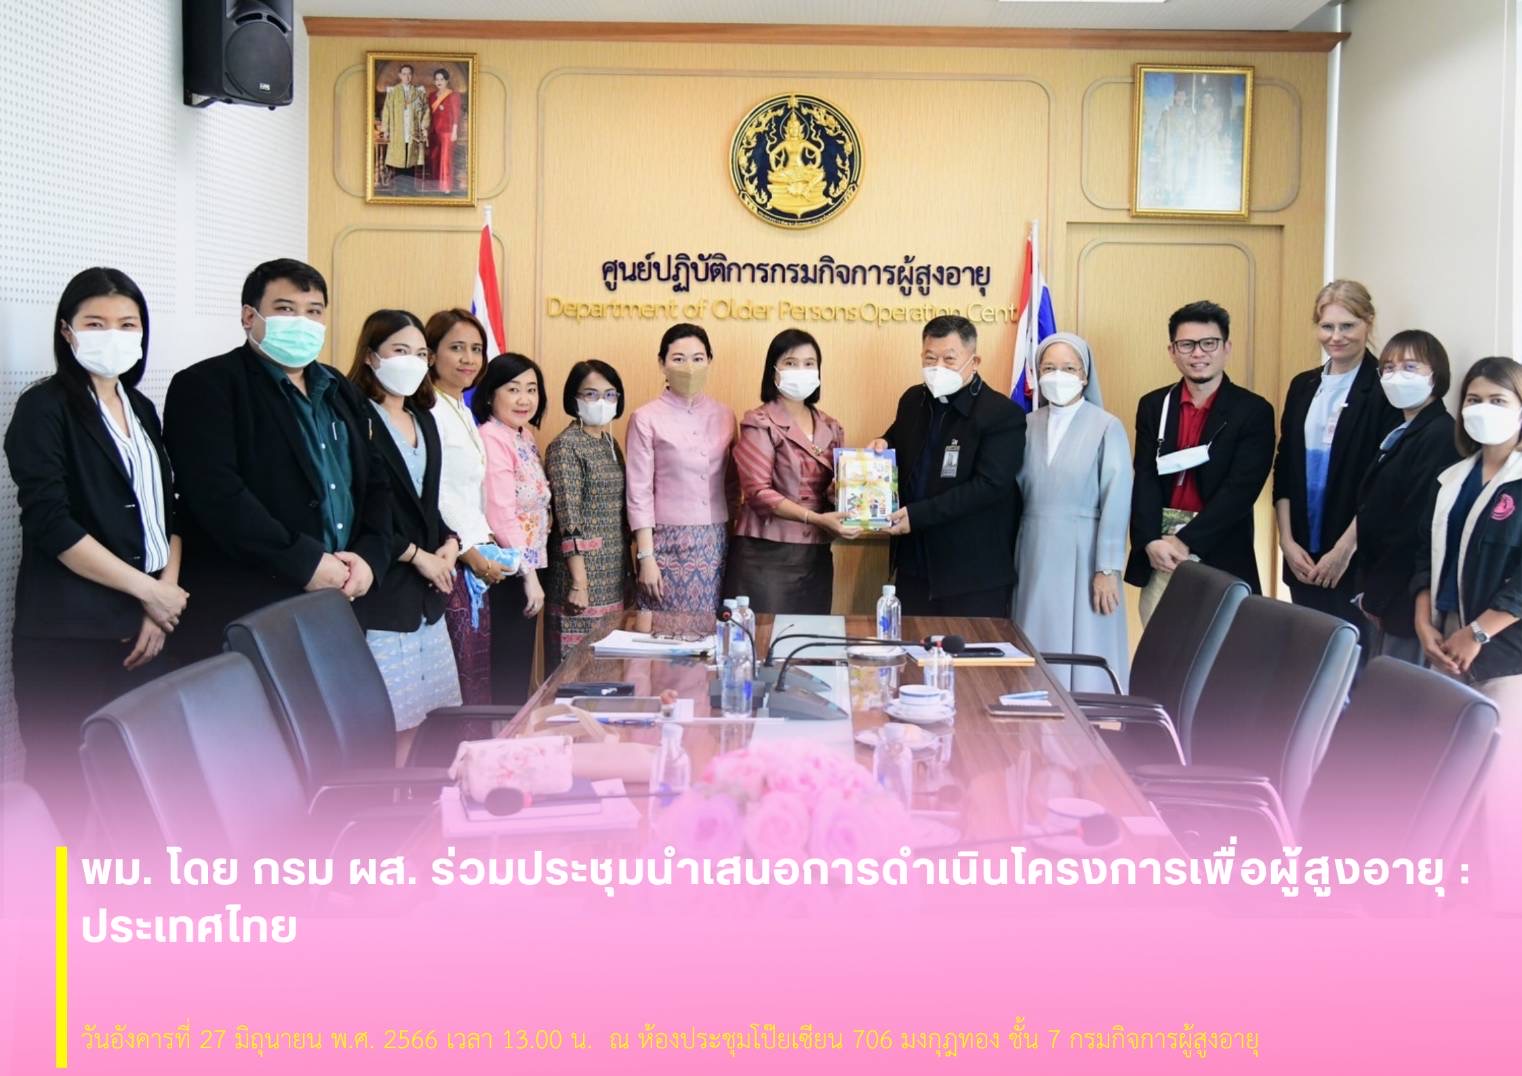 พม. โดย กรม ผส. ร่วมประชุมนำเสนอการดำเนินโครงการเพื่อผู้สูงอายุ : ประเทศไทย